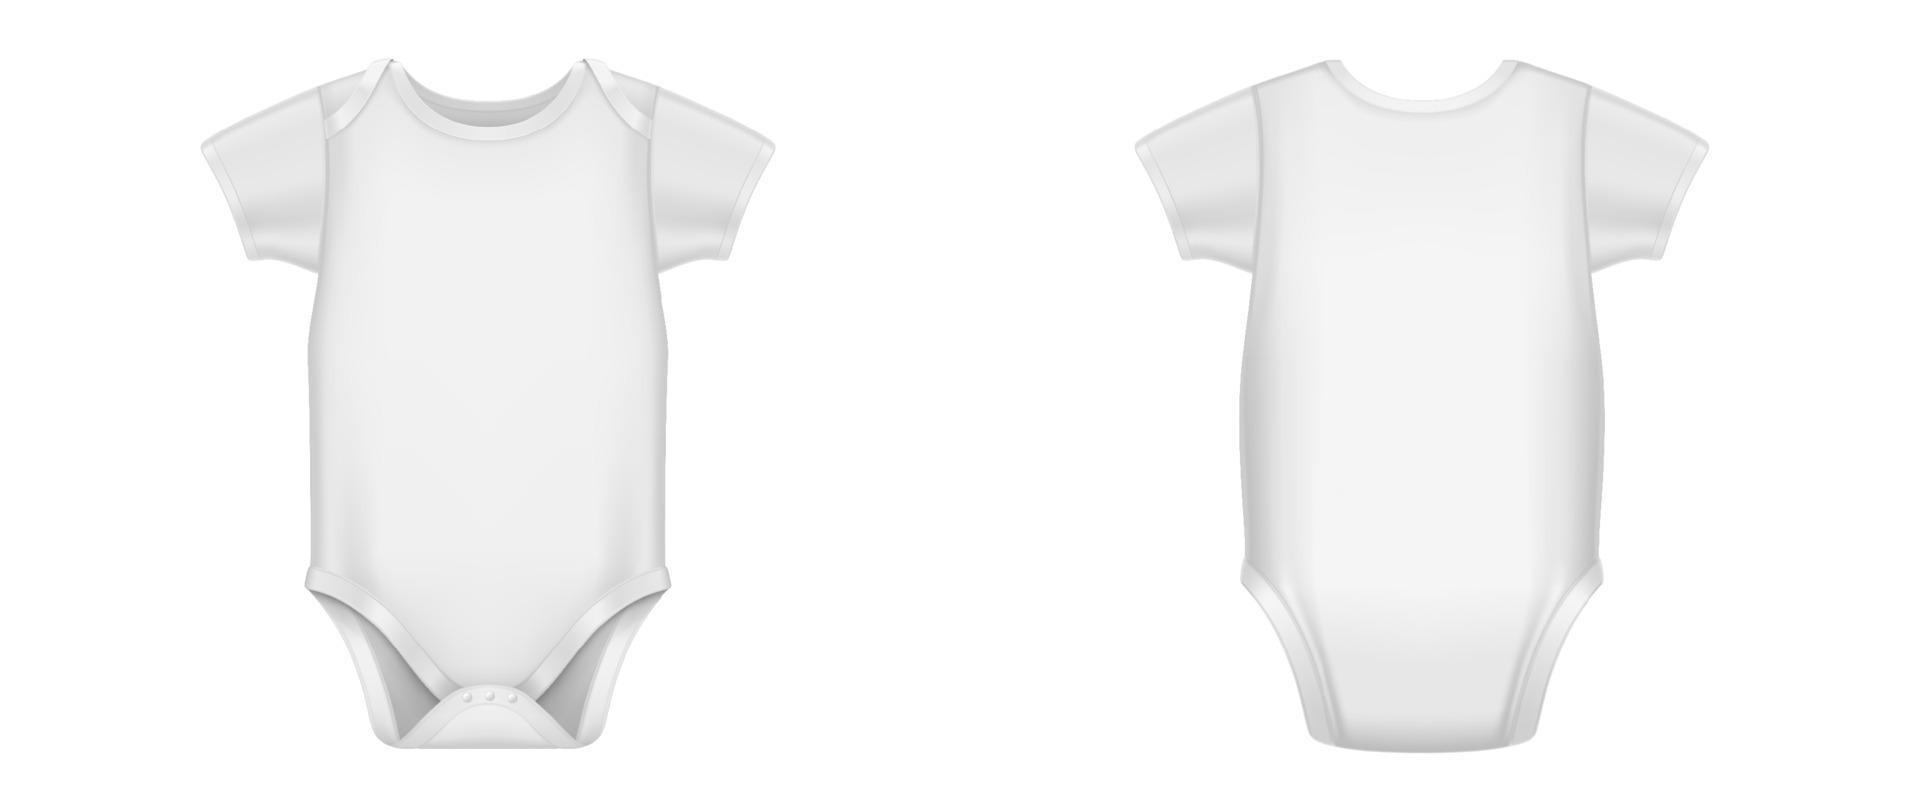 White baby bodysuit, infant romper vector